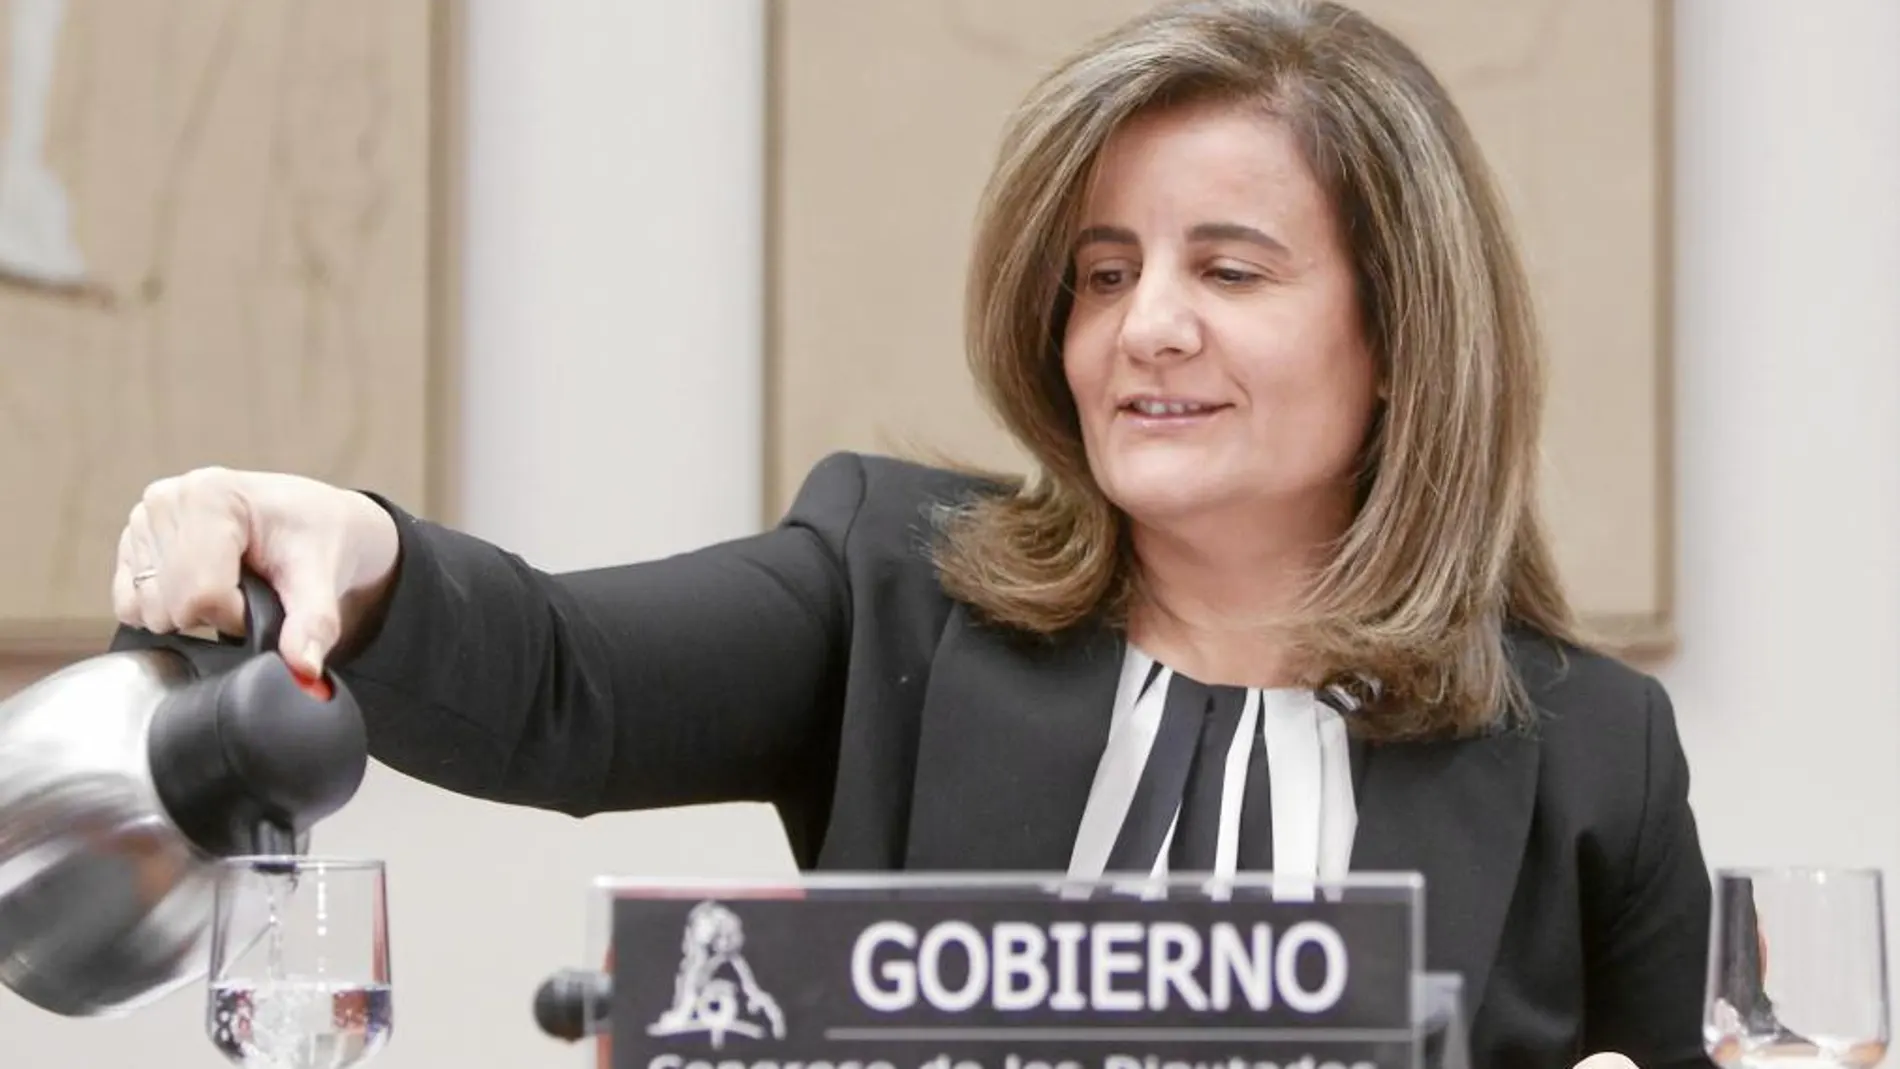 La ministra de Empleo y Seguridad Social, Fátima Báñez, durante su comparecencia, ayer, en el Congreso